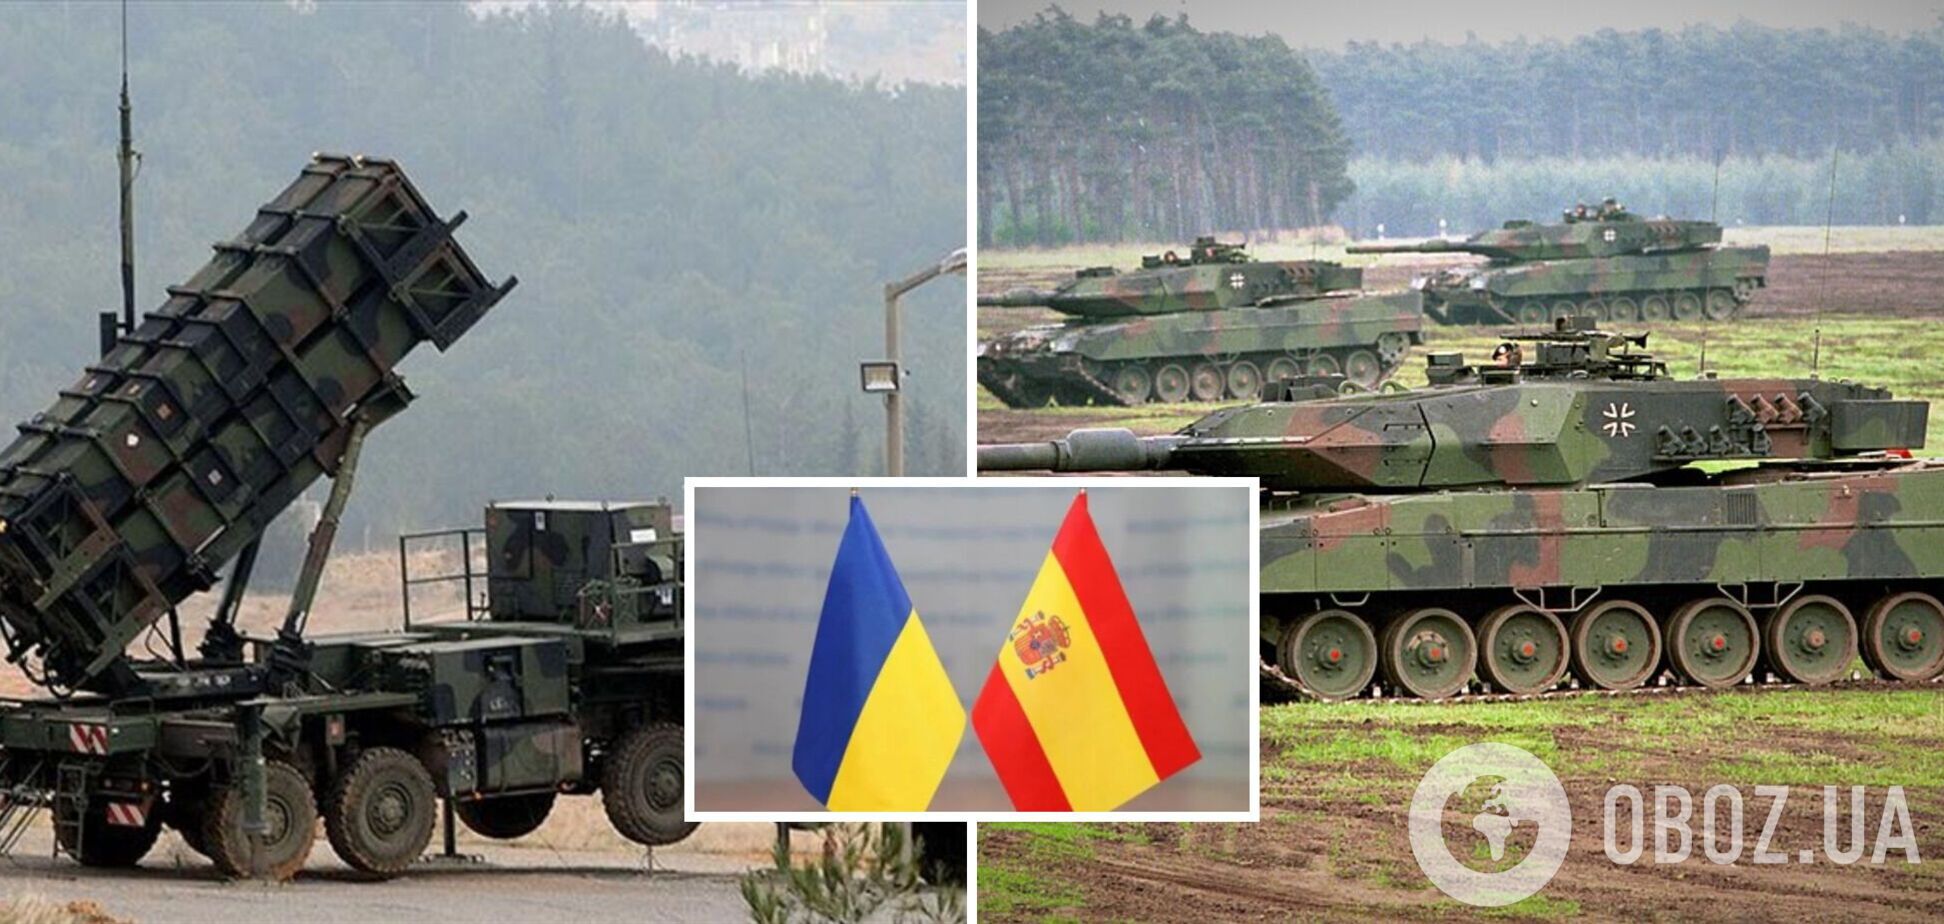 Испания предоставит Украине танки Leopard, системы ПВО и присоединится к плану fast recovery: Санчес раскрыл детали помощи